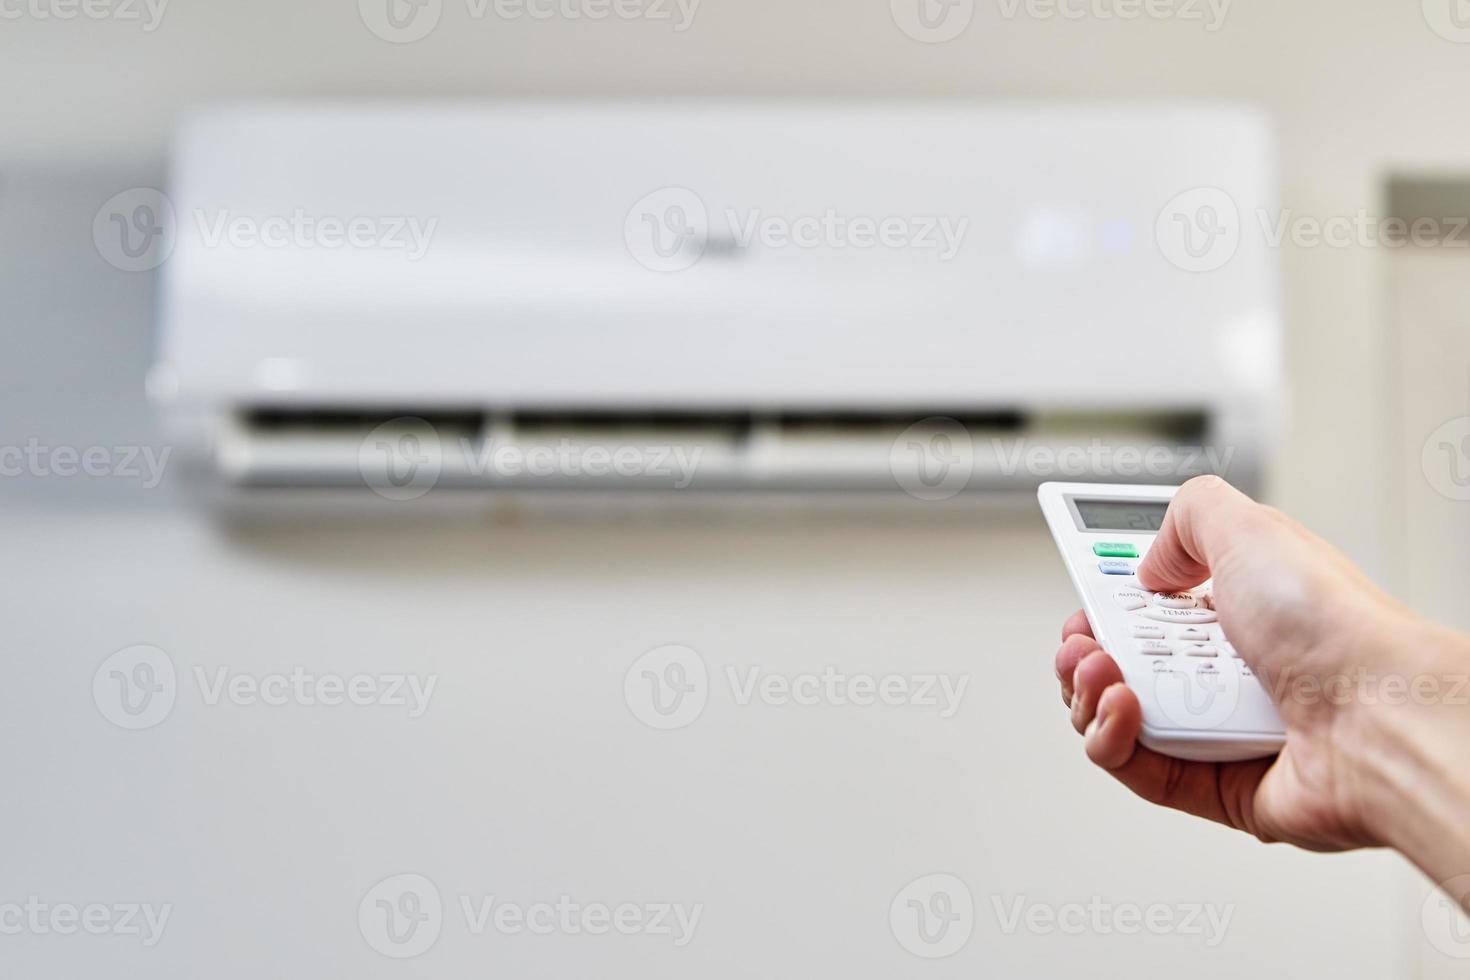 réglage manuel de la température sur le climatiseur photo